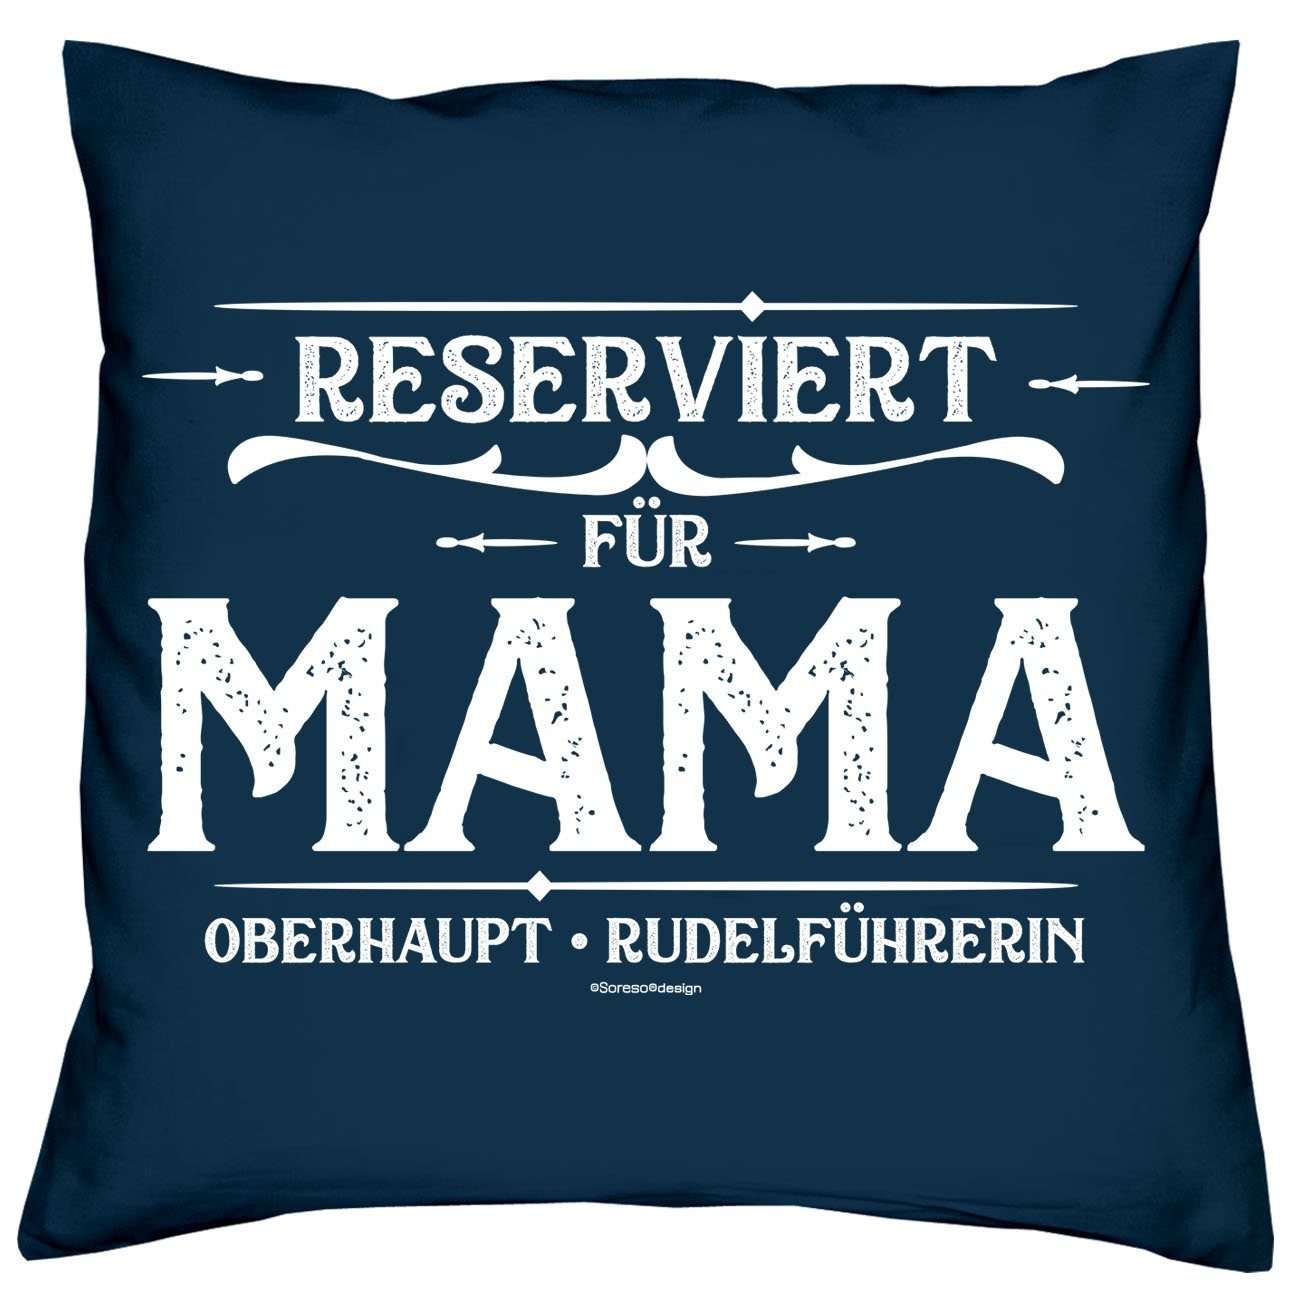 Reserviert Kissen-Set mit Soreso® Geschenk Dekokissen für Vatertag Muttertag für Papa Mama Urkunden, navy-blau Reserviert